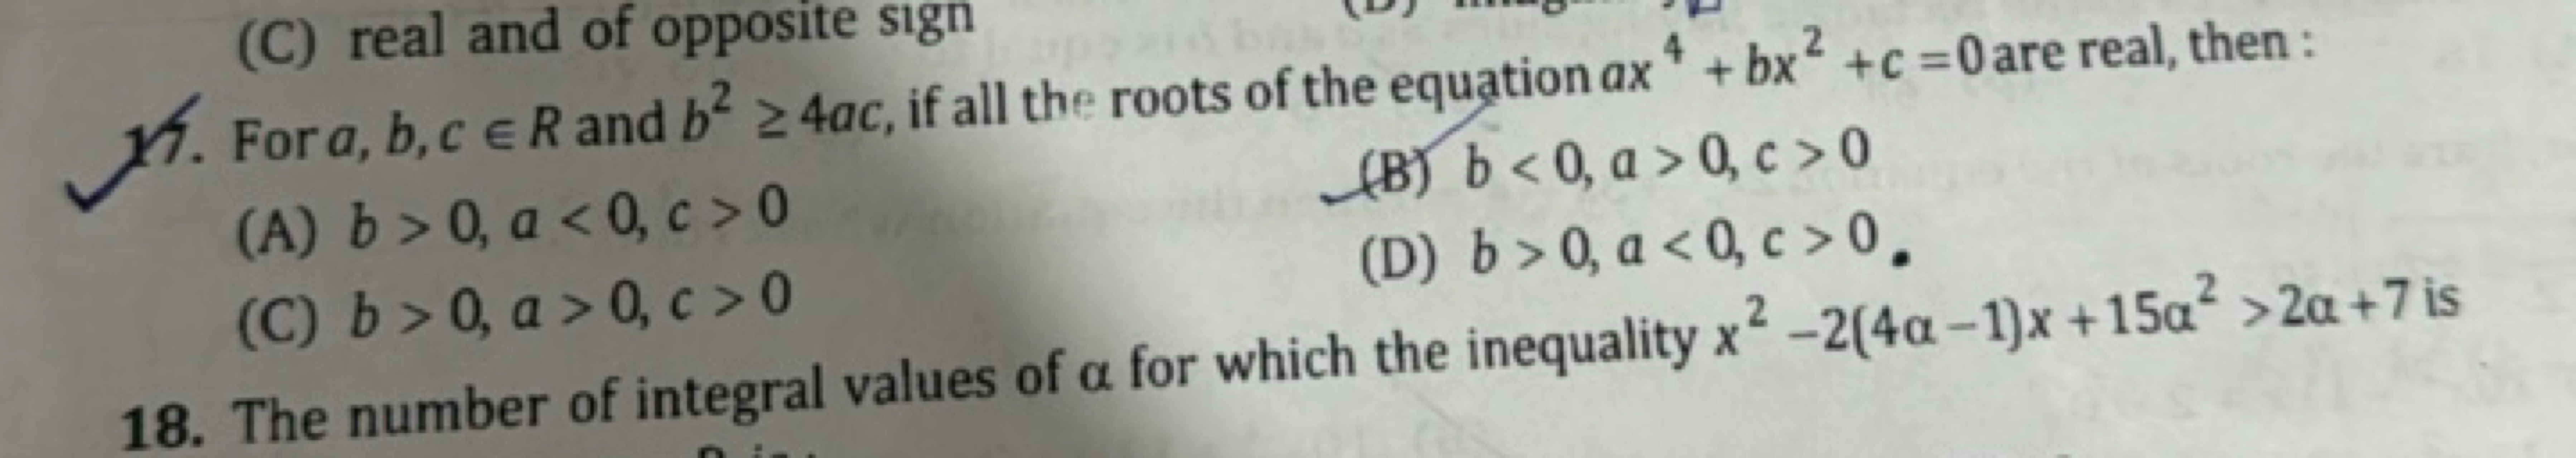 For a,b,c∈R and b2≥4ac, if all the roots of the equation ax4+bx2+c=0 a